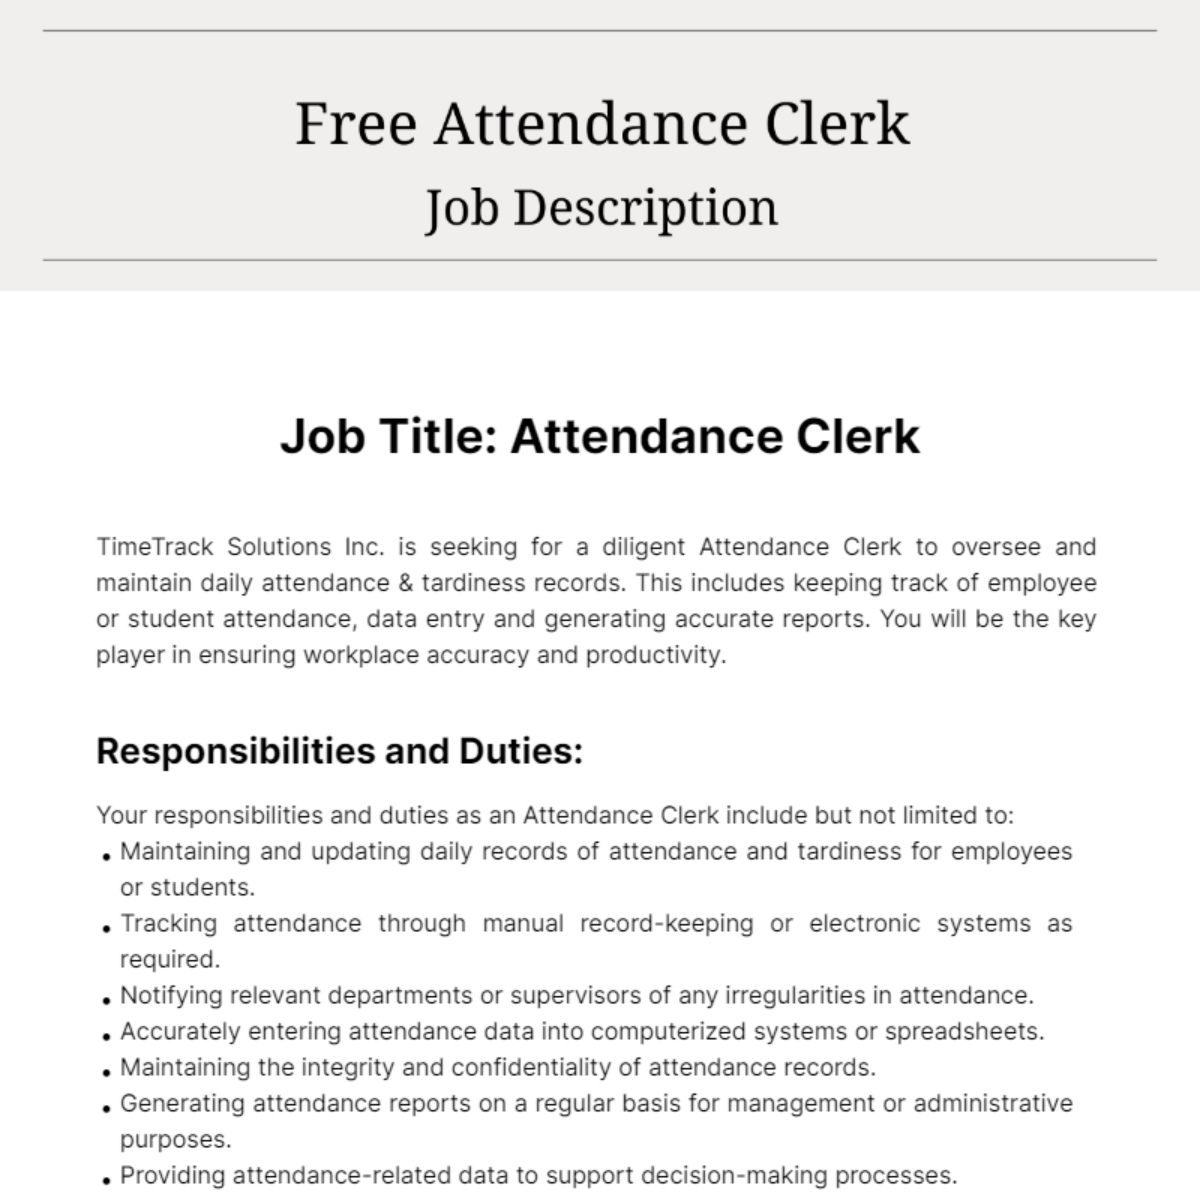 Free Attendance Clerk Job Description Template